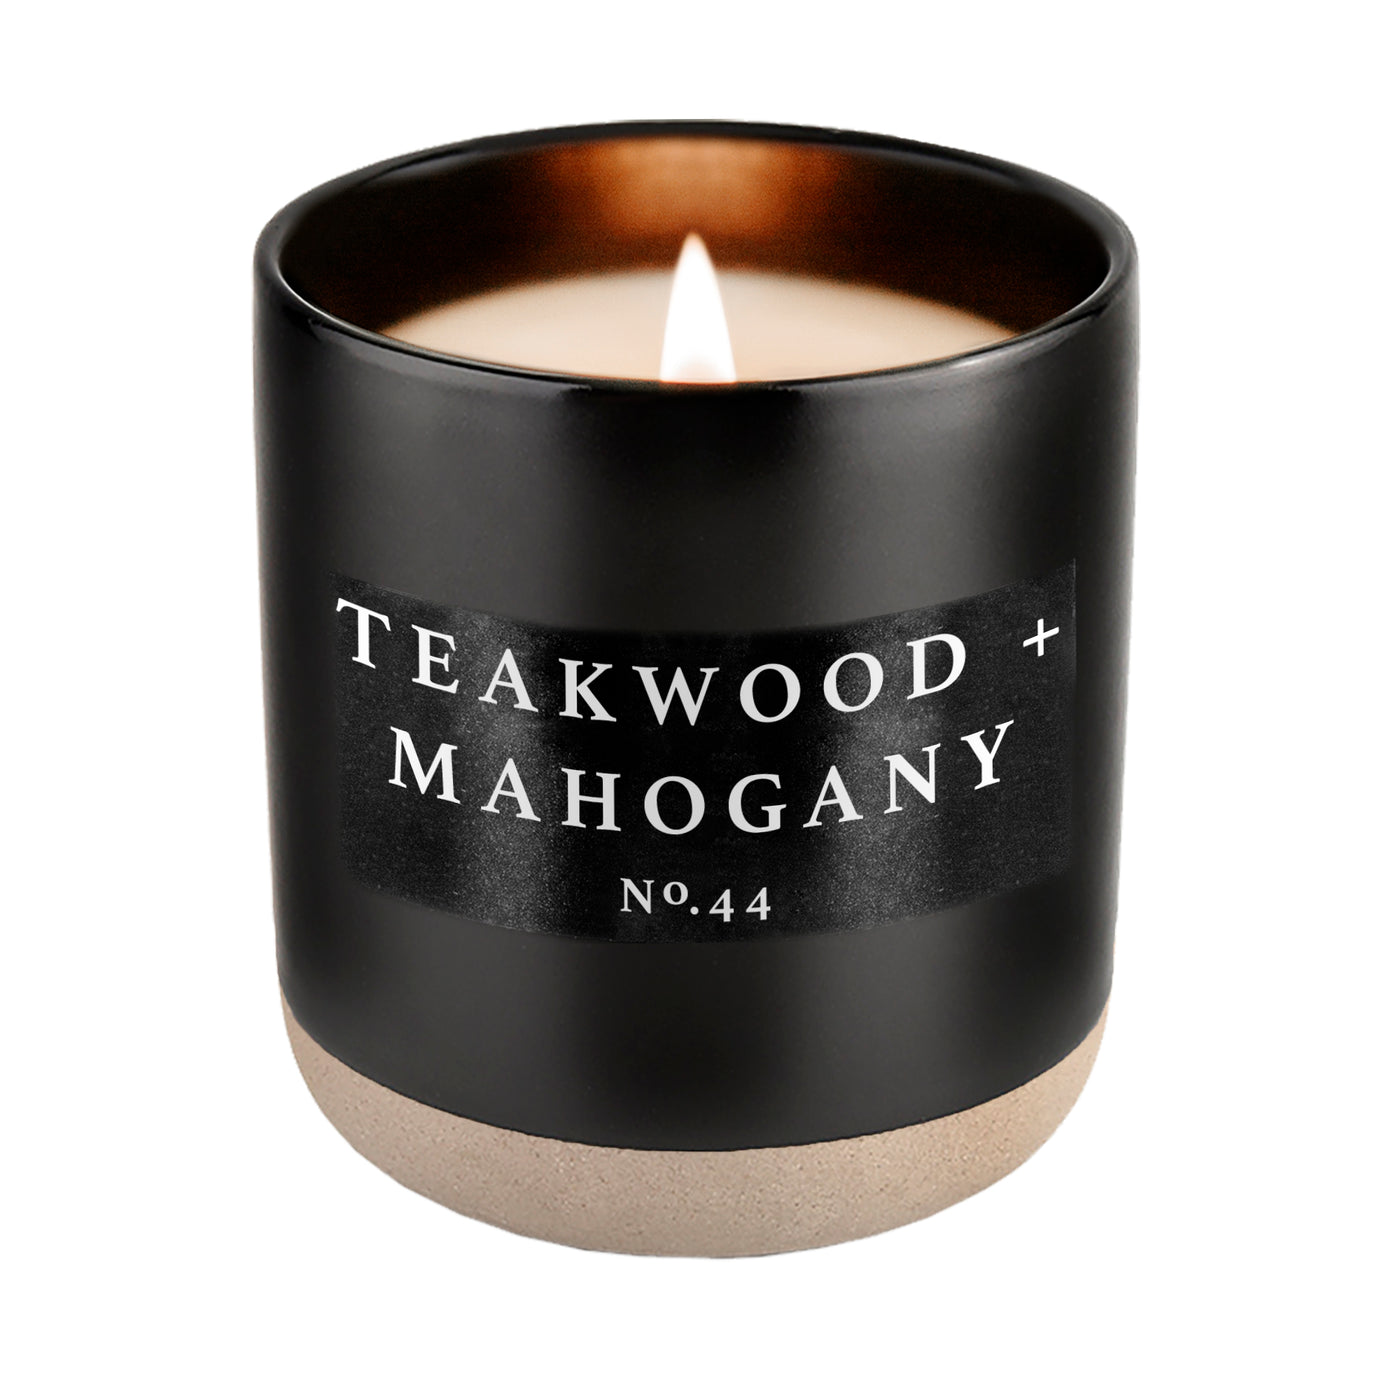 Teakwood and Mahogany Soy Candle - Black Stoneware Jar - 12 oz